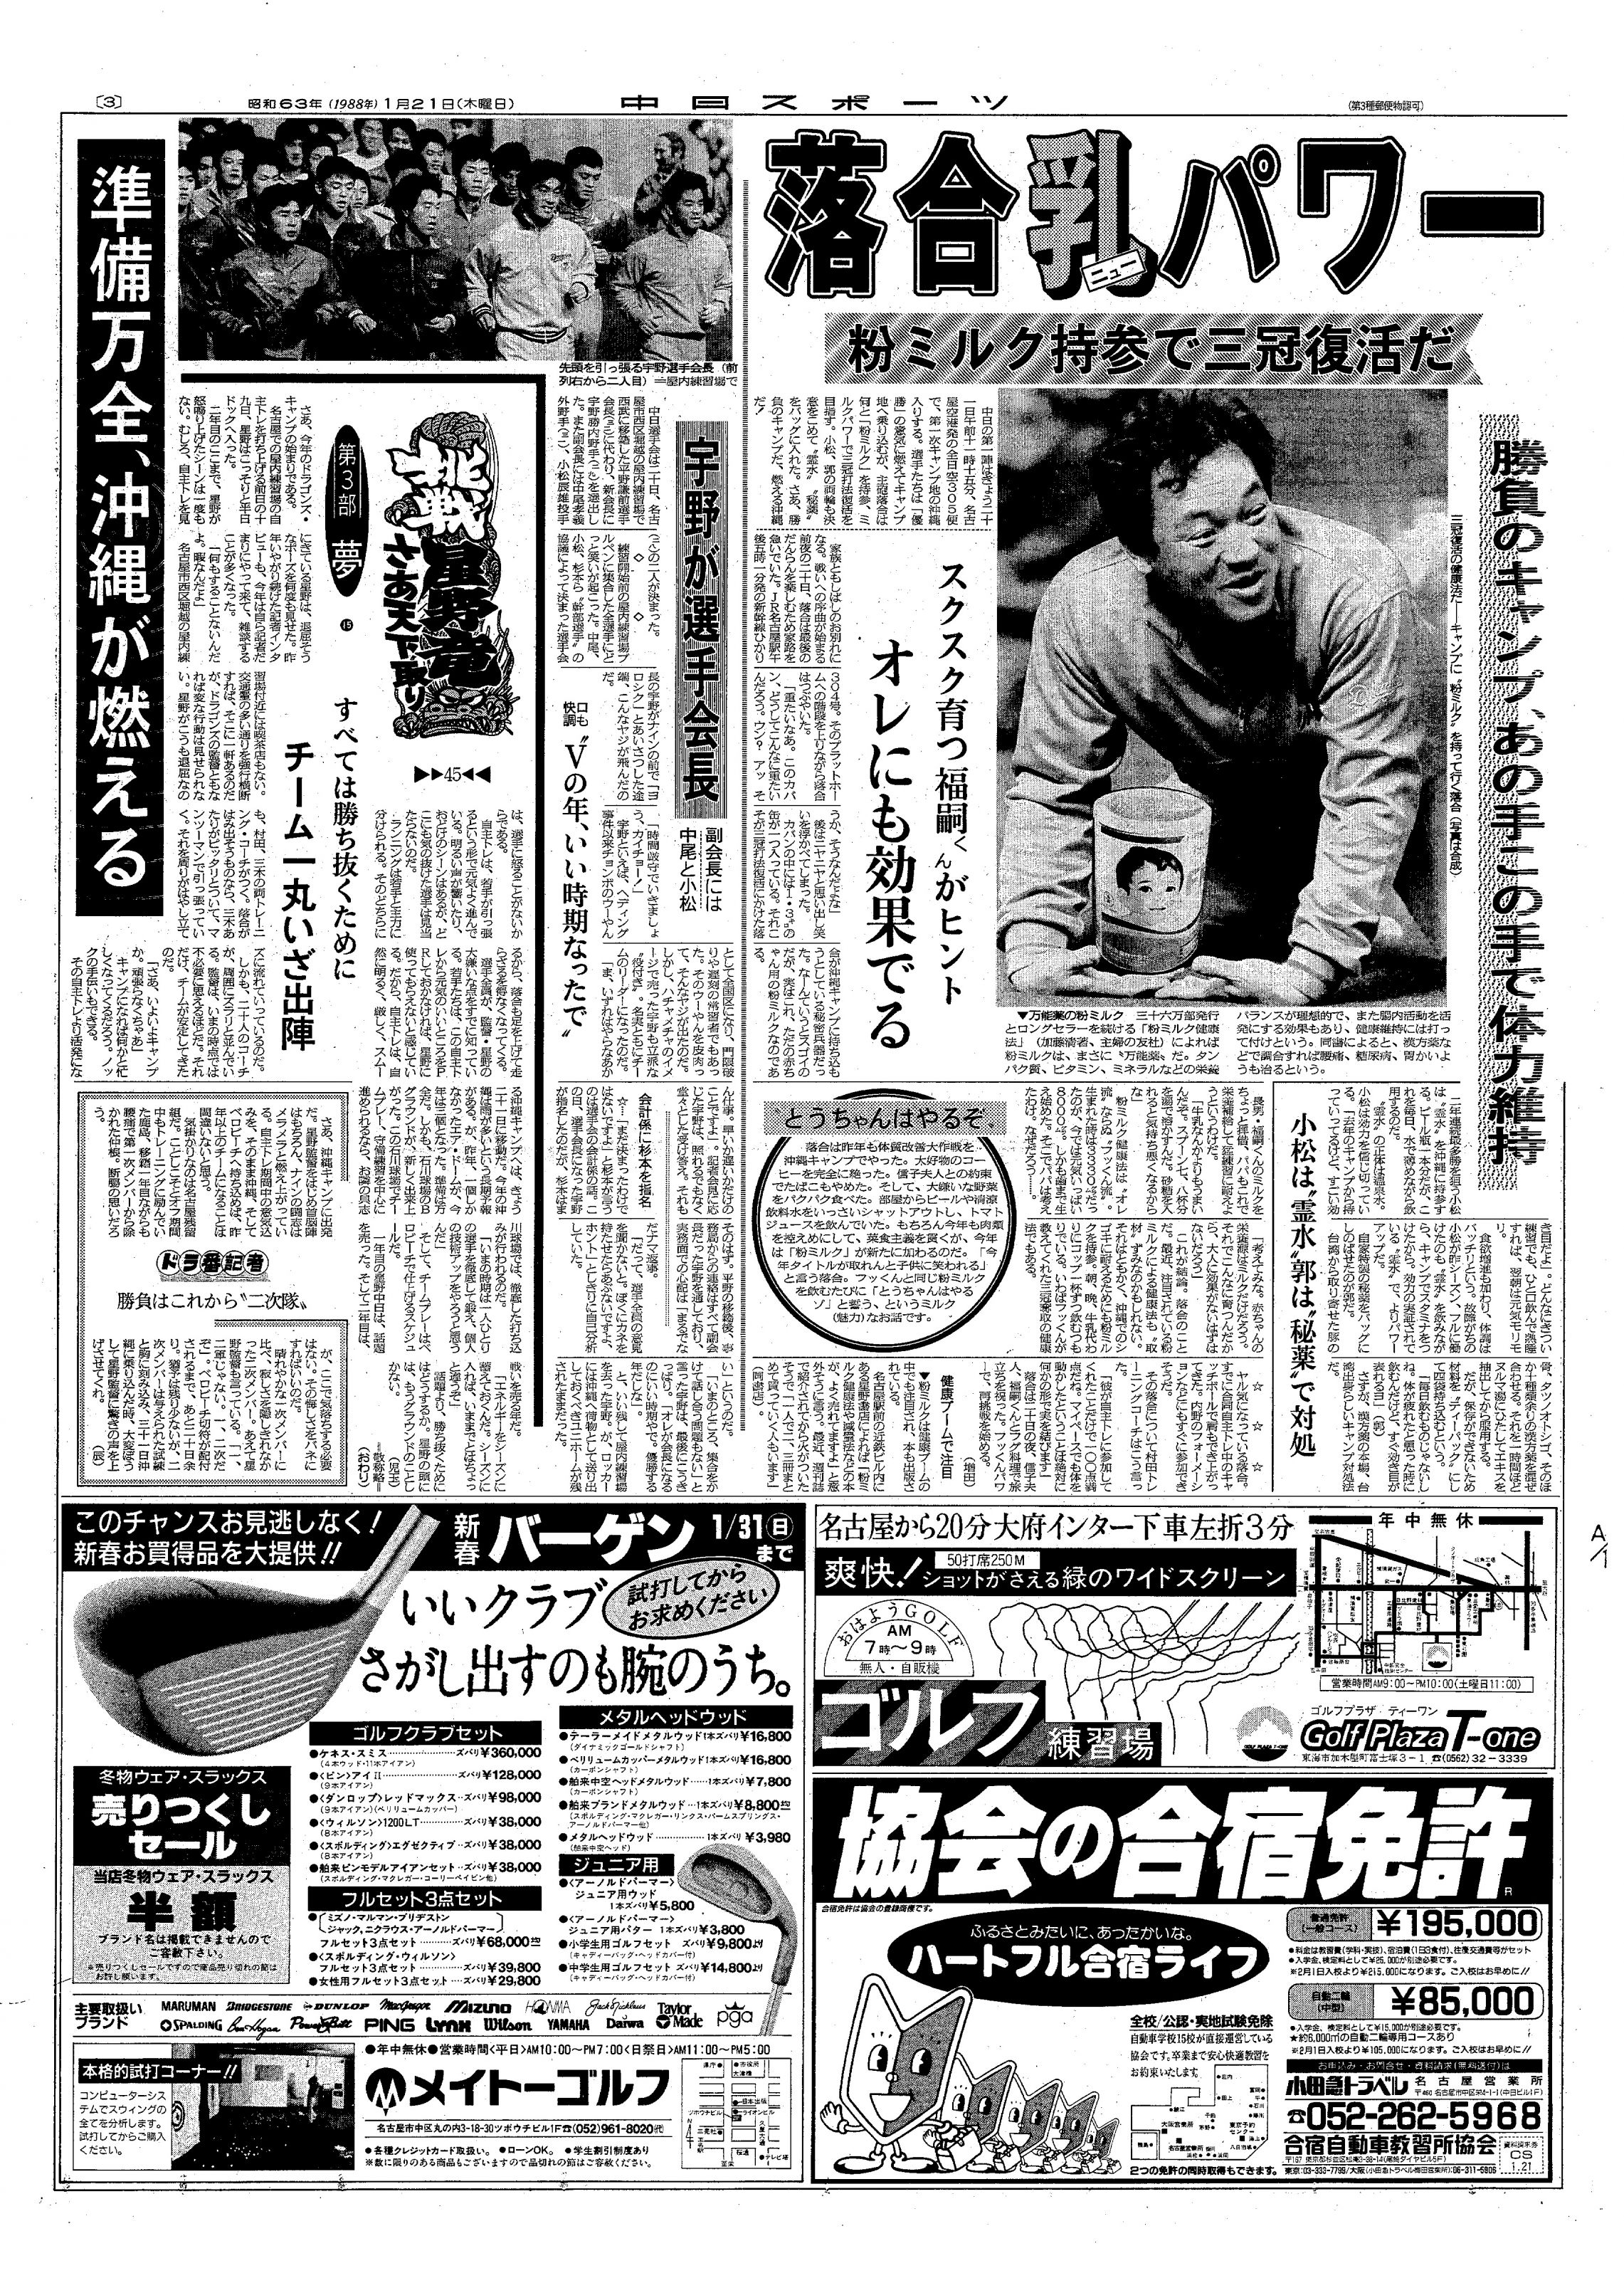 中日ドラゴンズ 1988年優勝の新聞下敷き 通販